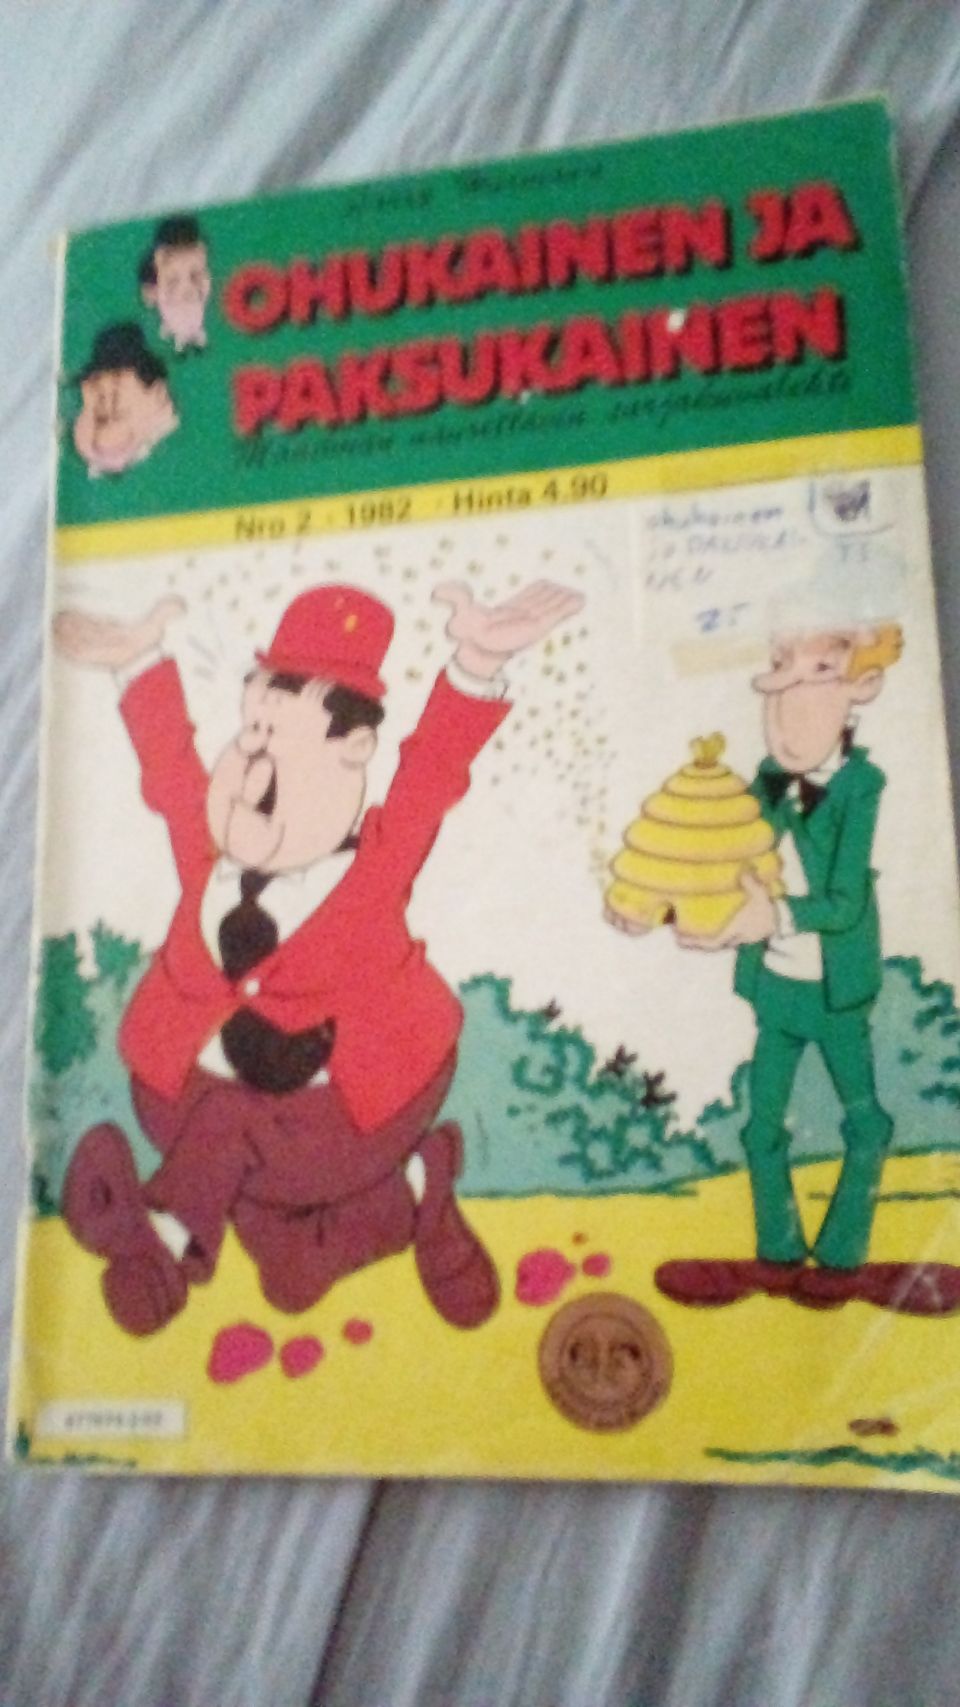 Ohukainen ja paksukainen 1982 numero 2.